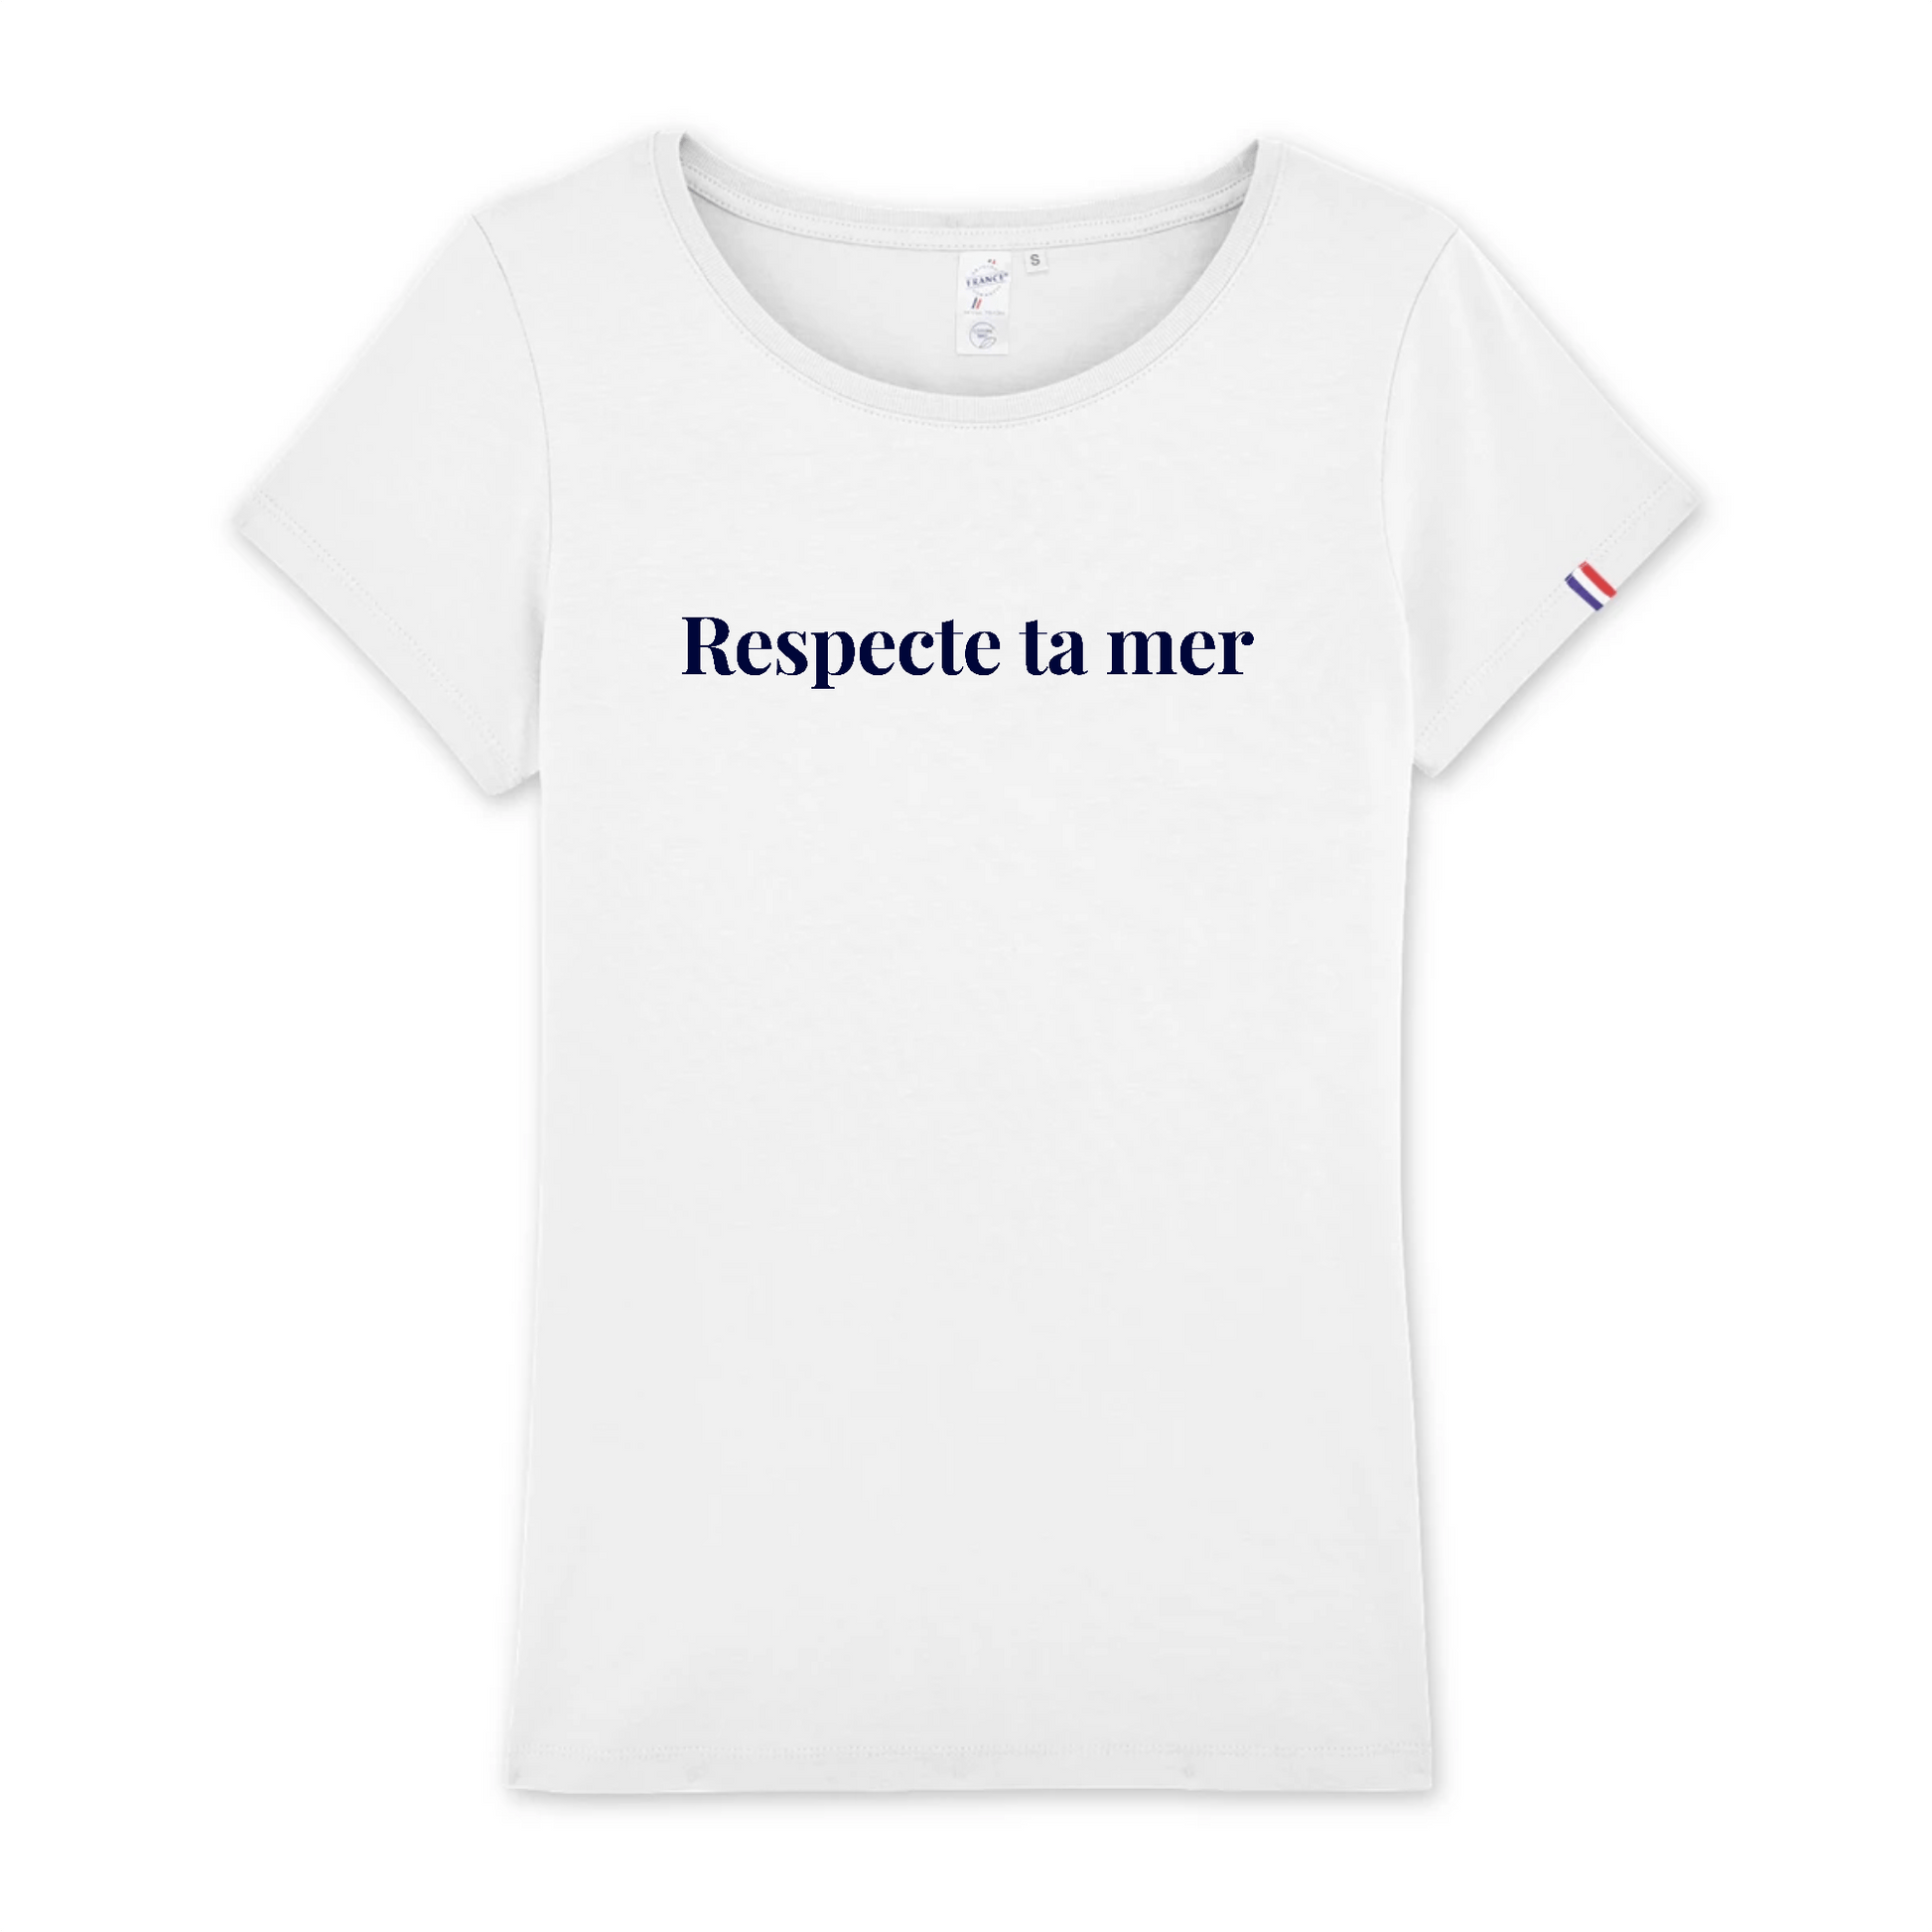 T-shirt femme en coton biologique fabriqué en France 🇫🇷 - Respecte ta mer - Oceansrespect 🌊🌍🌱